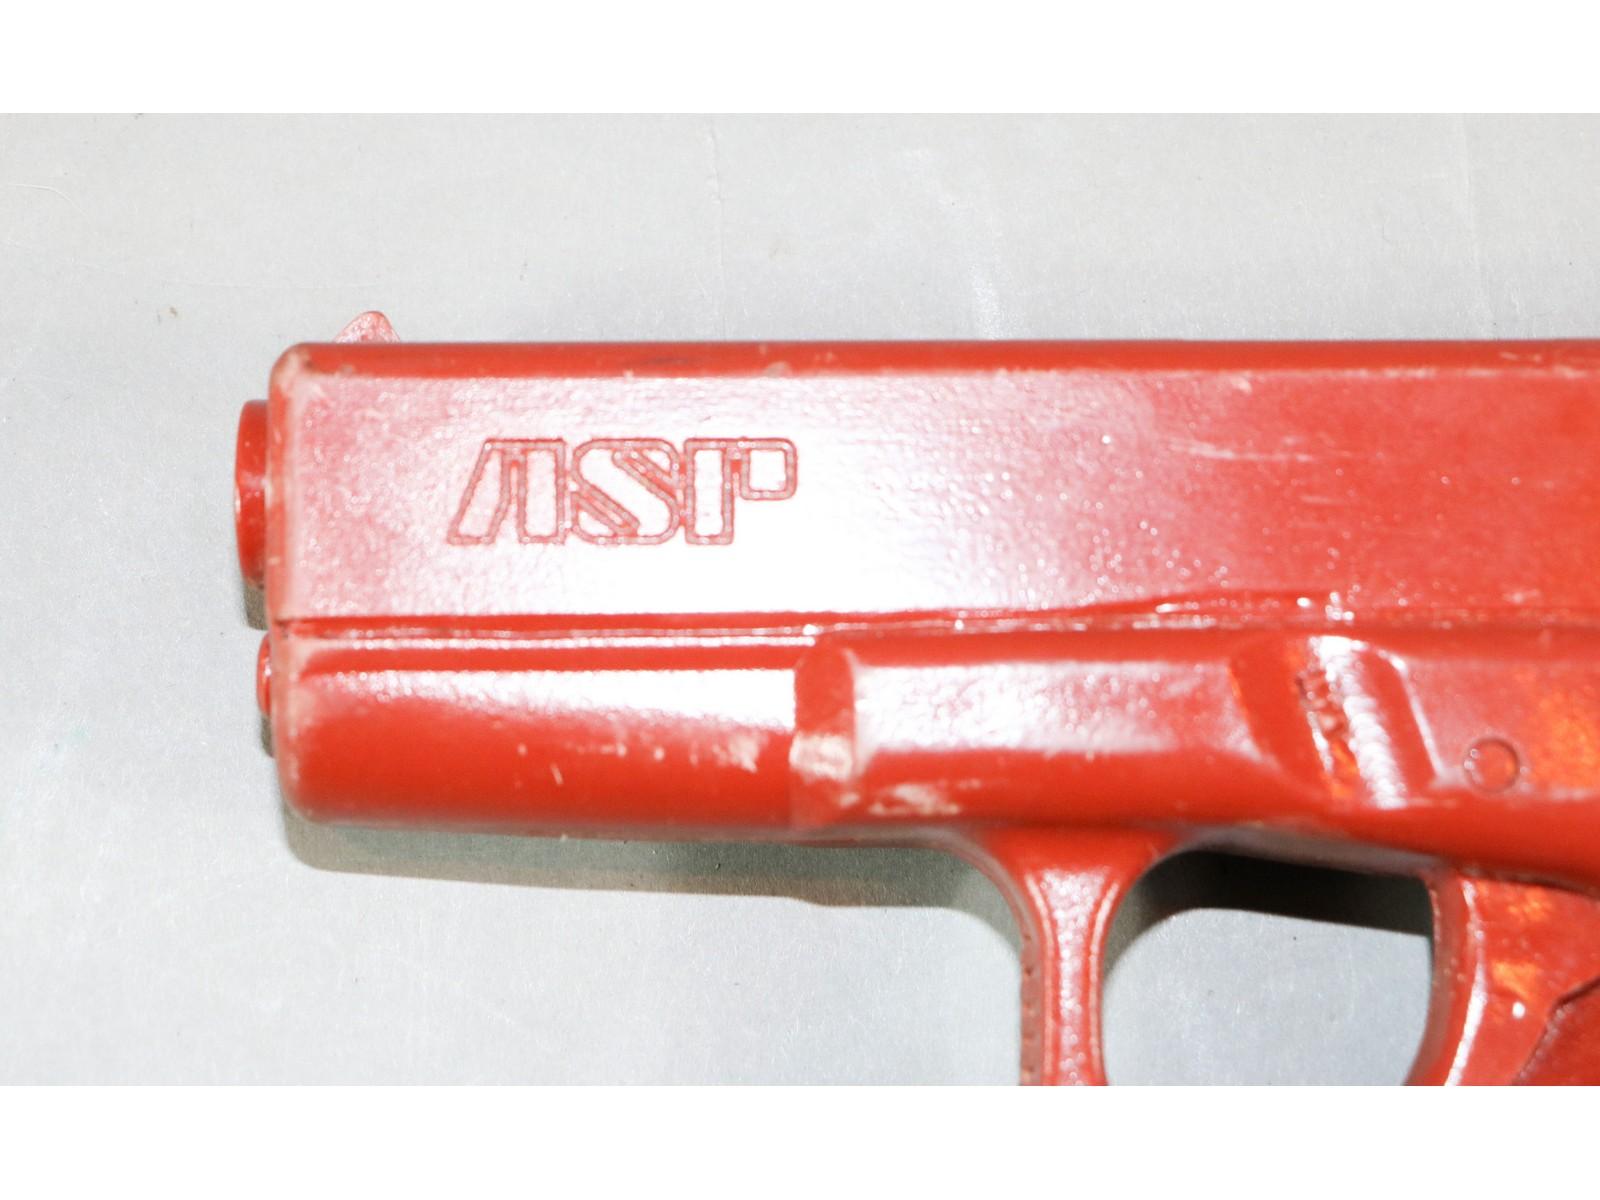 ASP Training Pistol